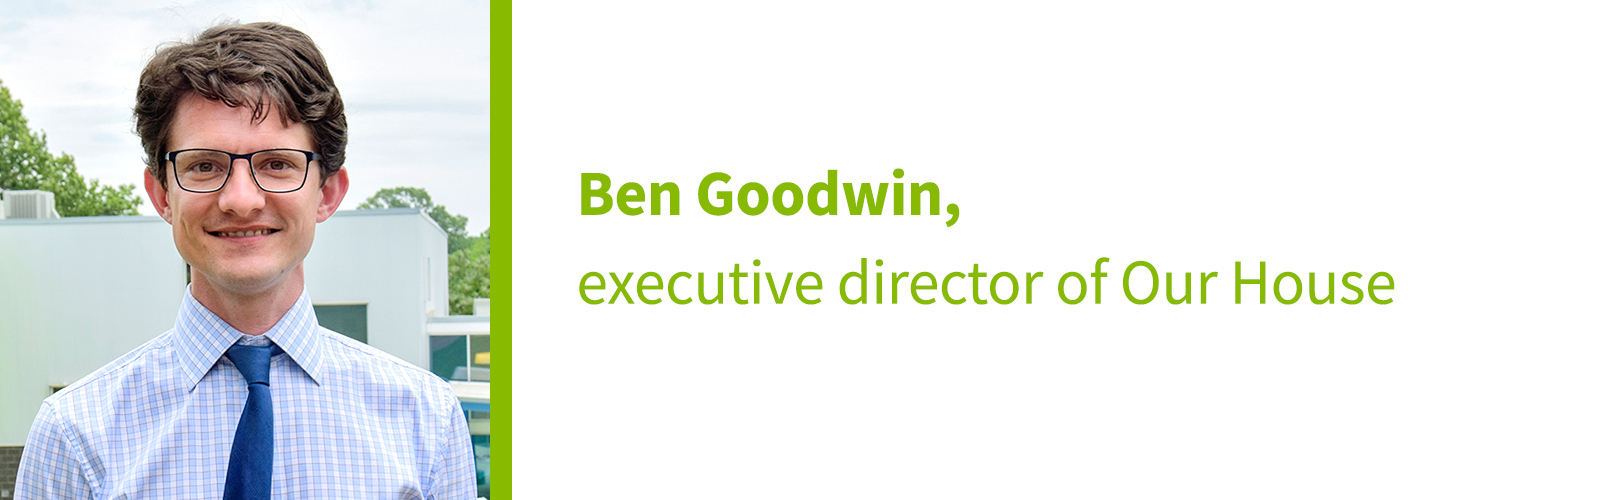 Ben Goodwin, executive director of Our House